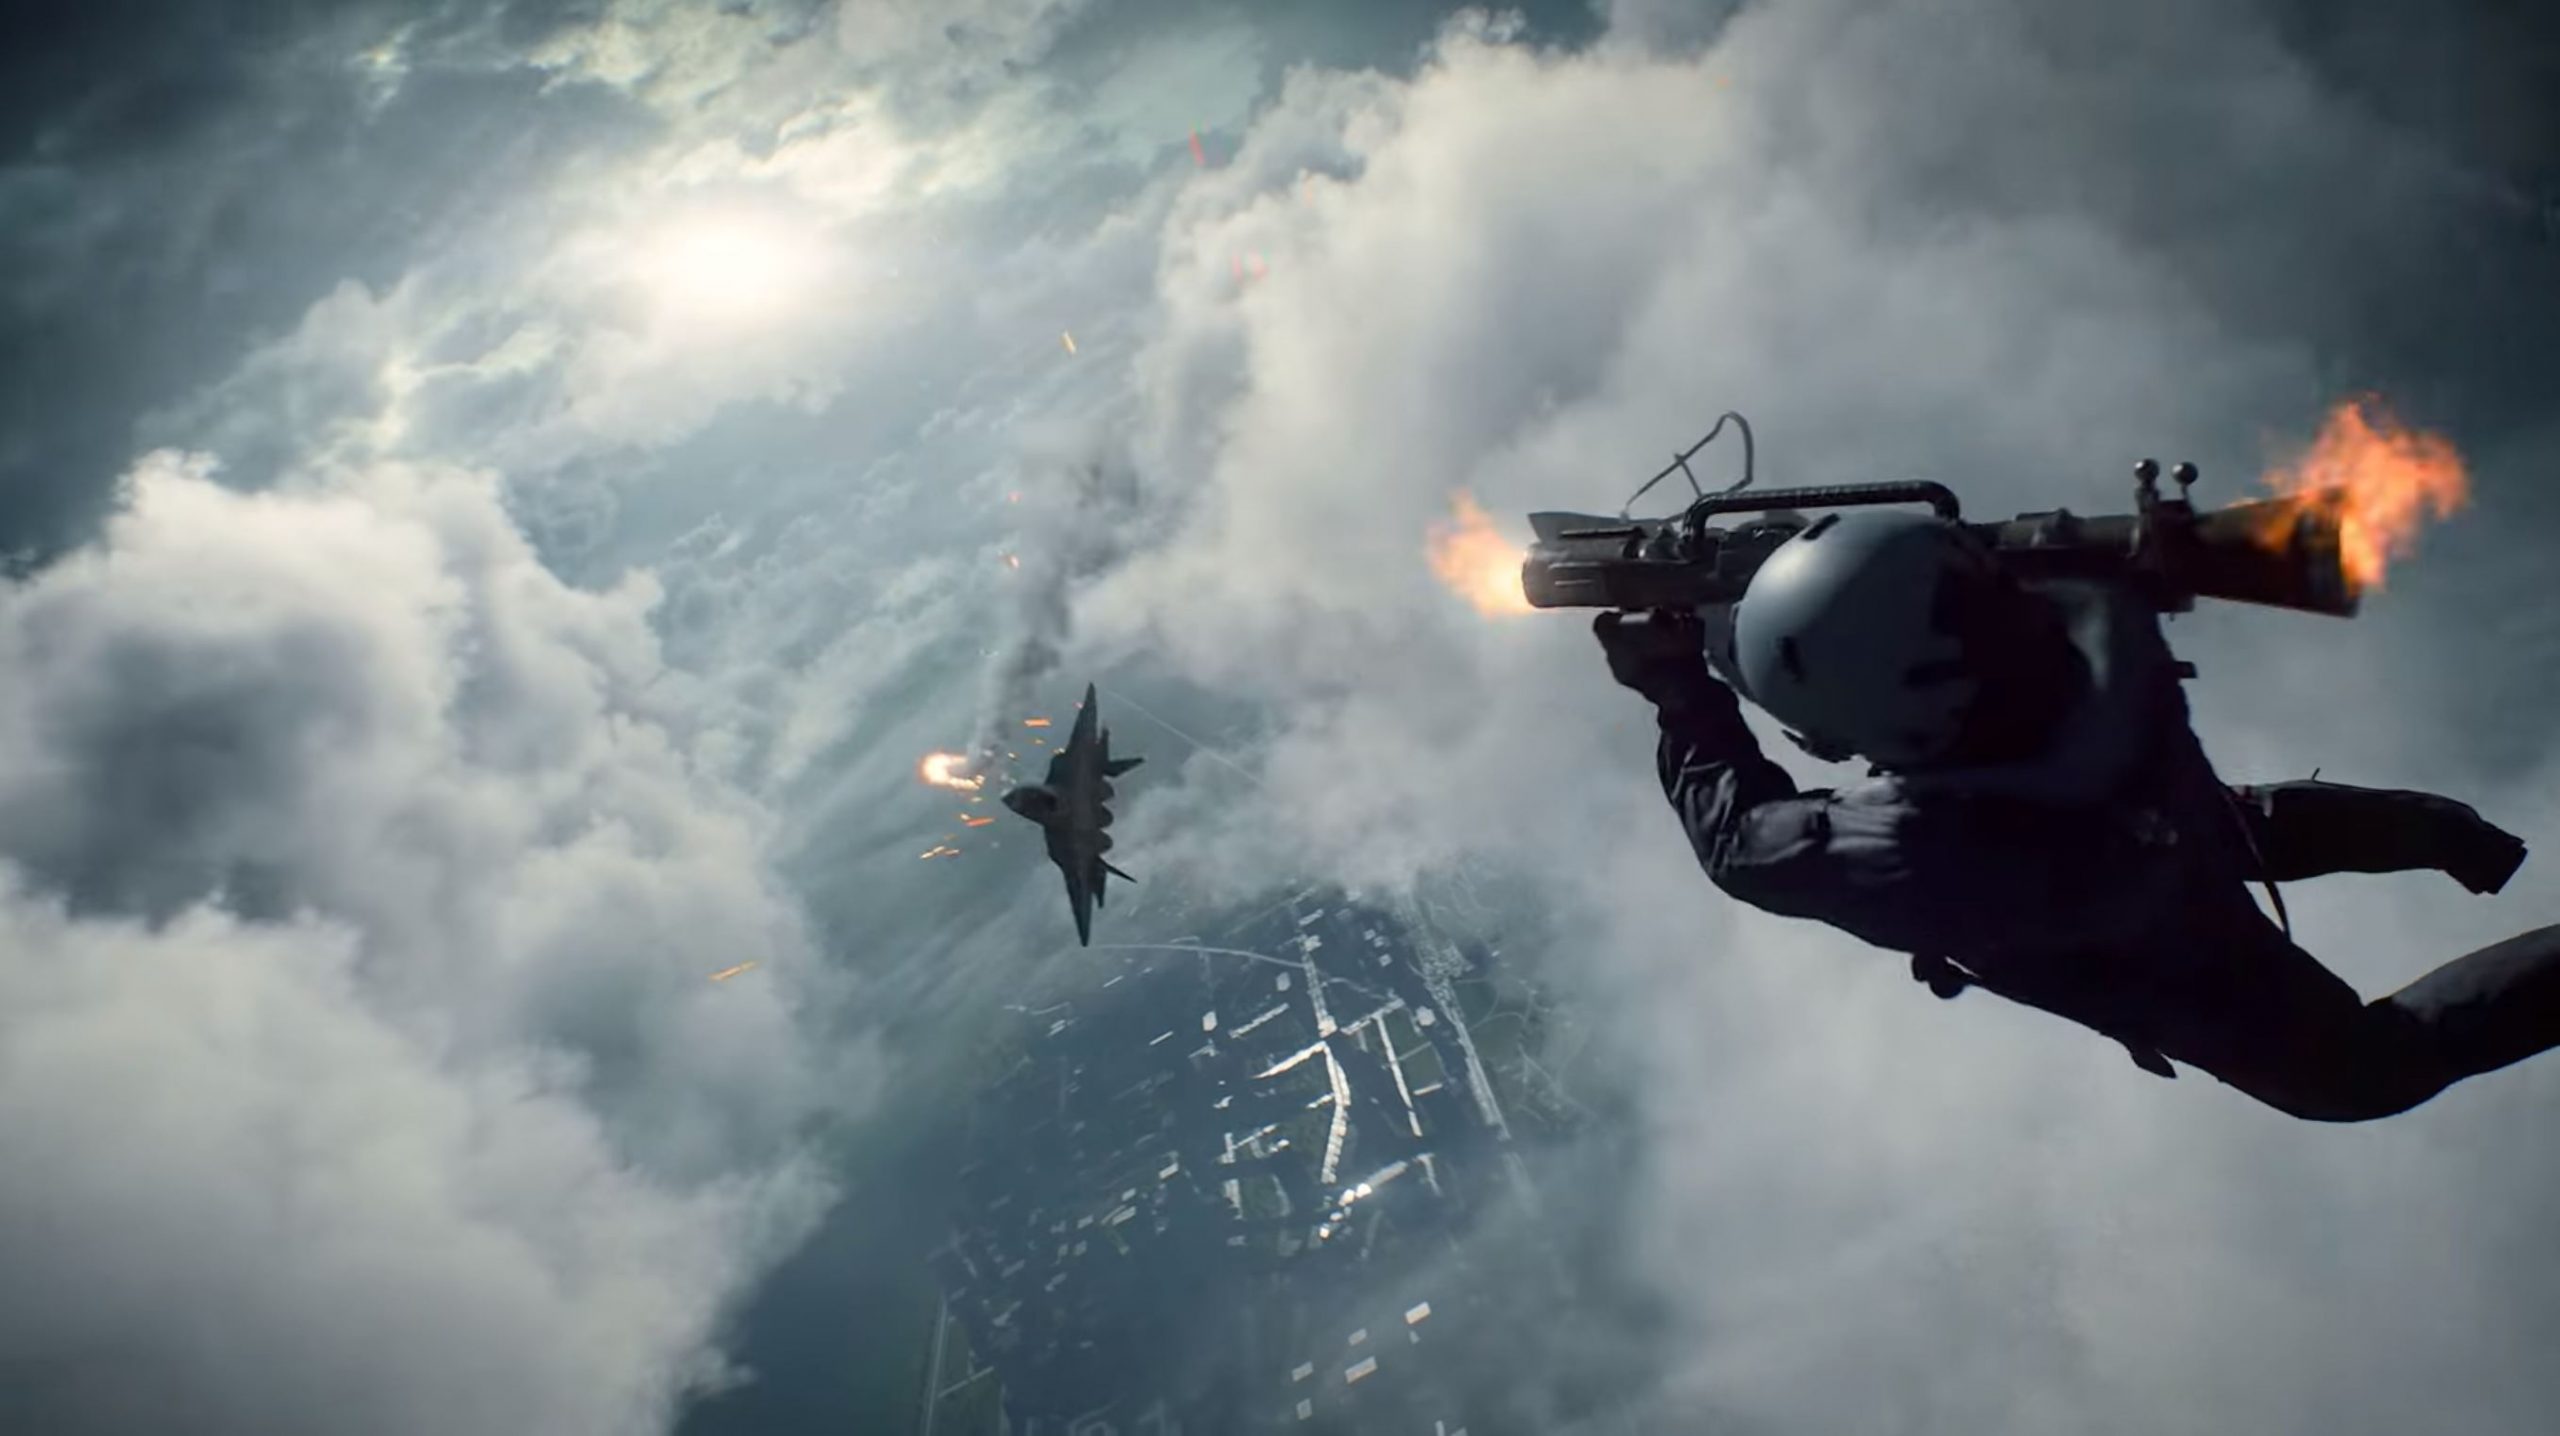 知名FPS射擊遊戲《戰地風雲》系列 9 日晚間揭露了最新作《戰地風雲 2042 》。